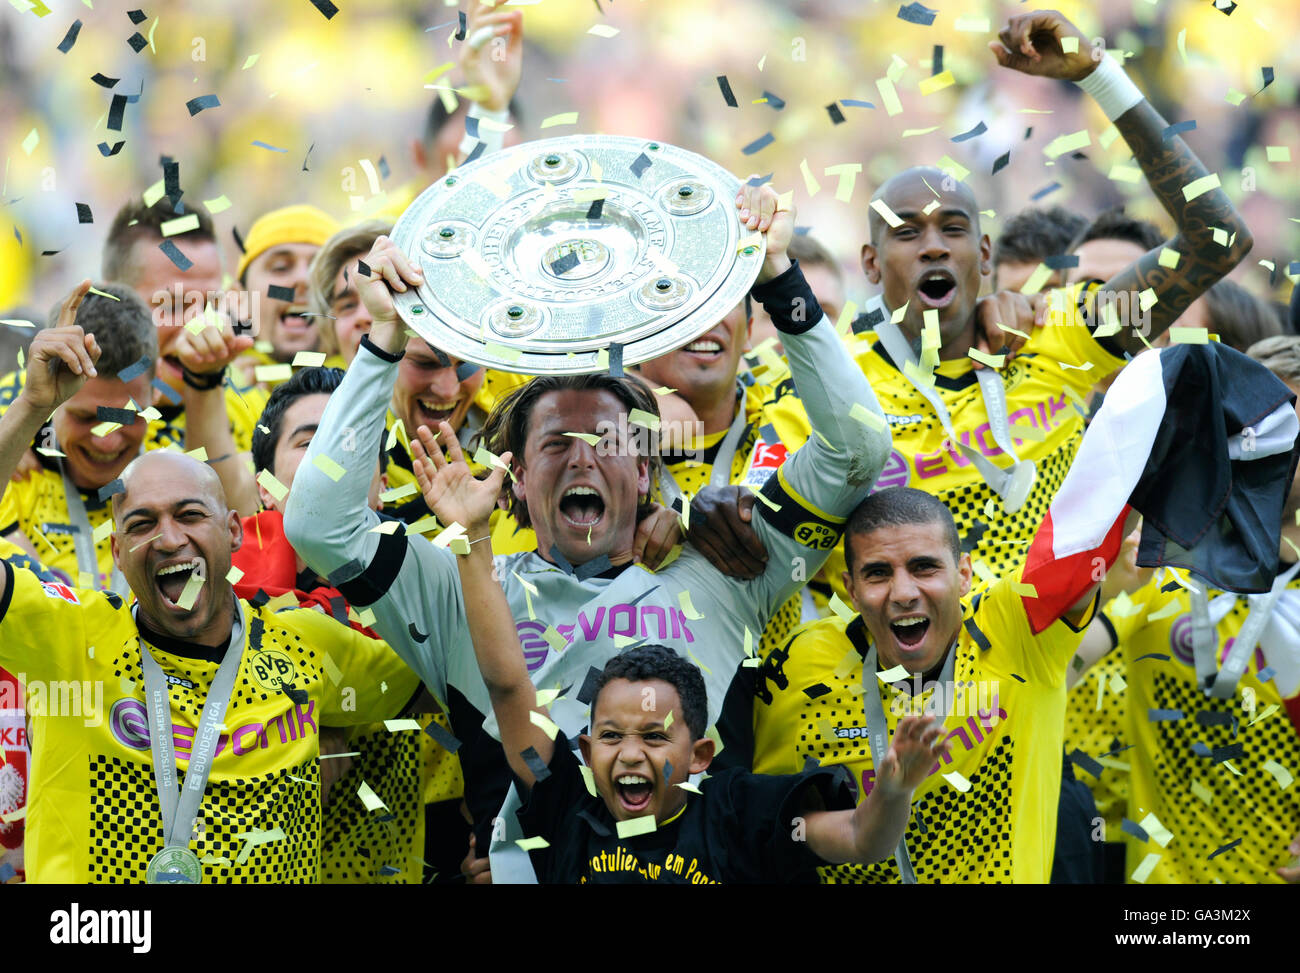 Borussia Dortmund, champion de football allemand, ils applaudissent, Roman Weidenfeller avec le trophée de champion, de gauche : Dede, Nuri Sahin Banque D'Images